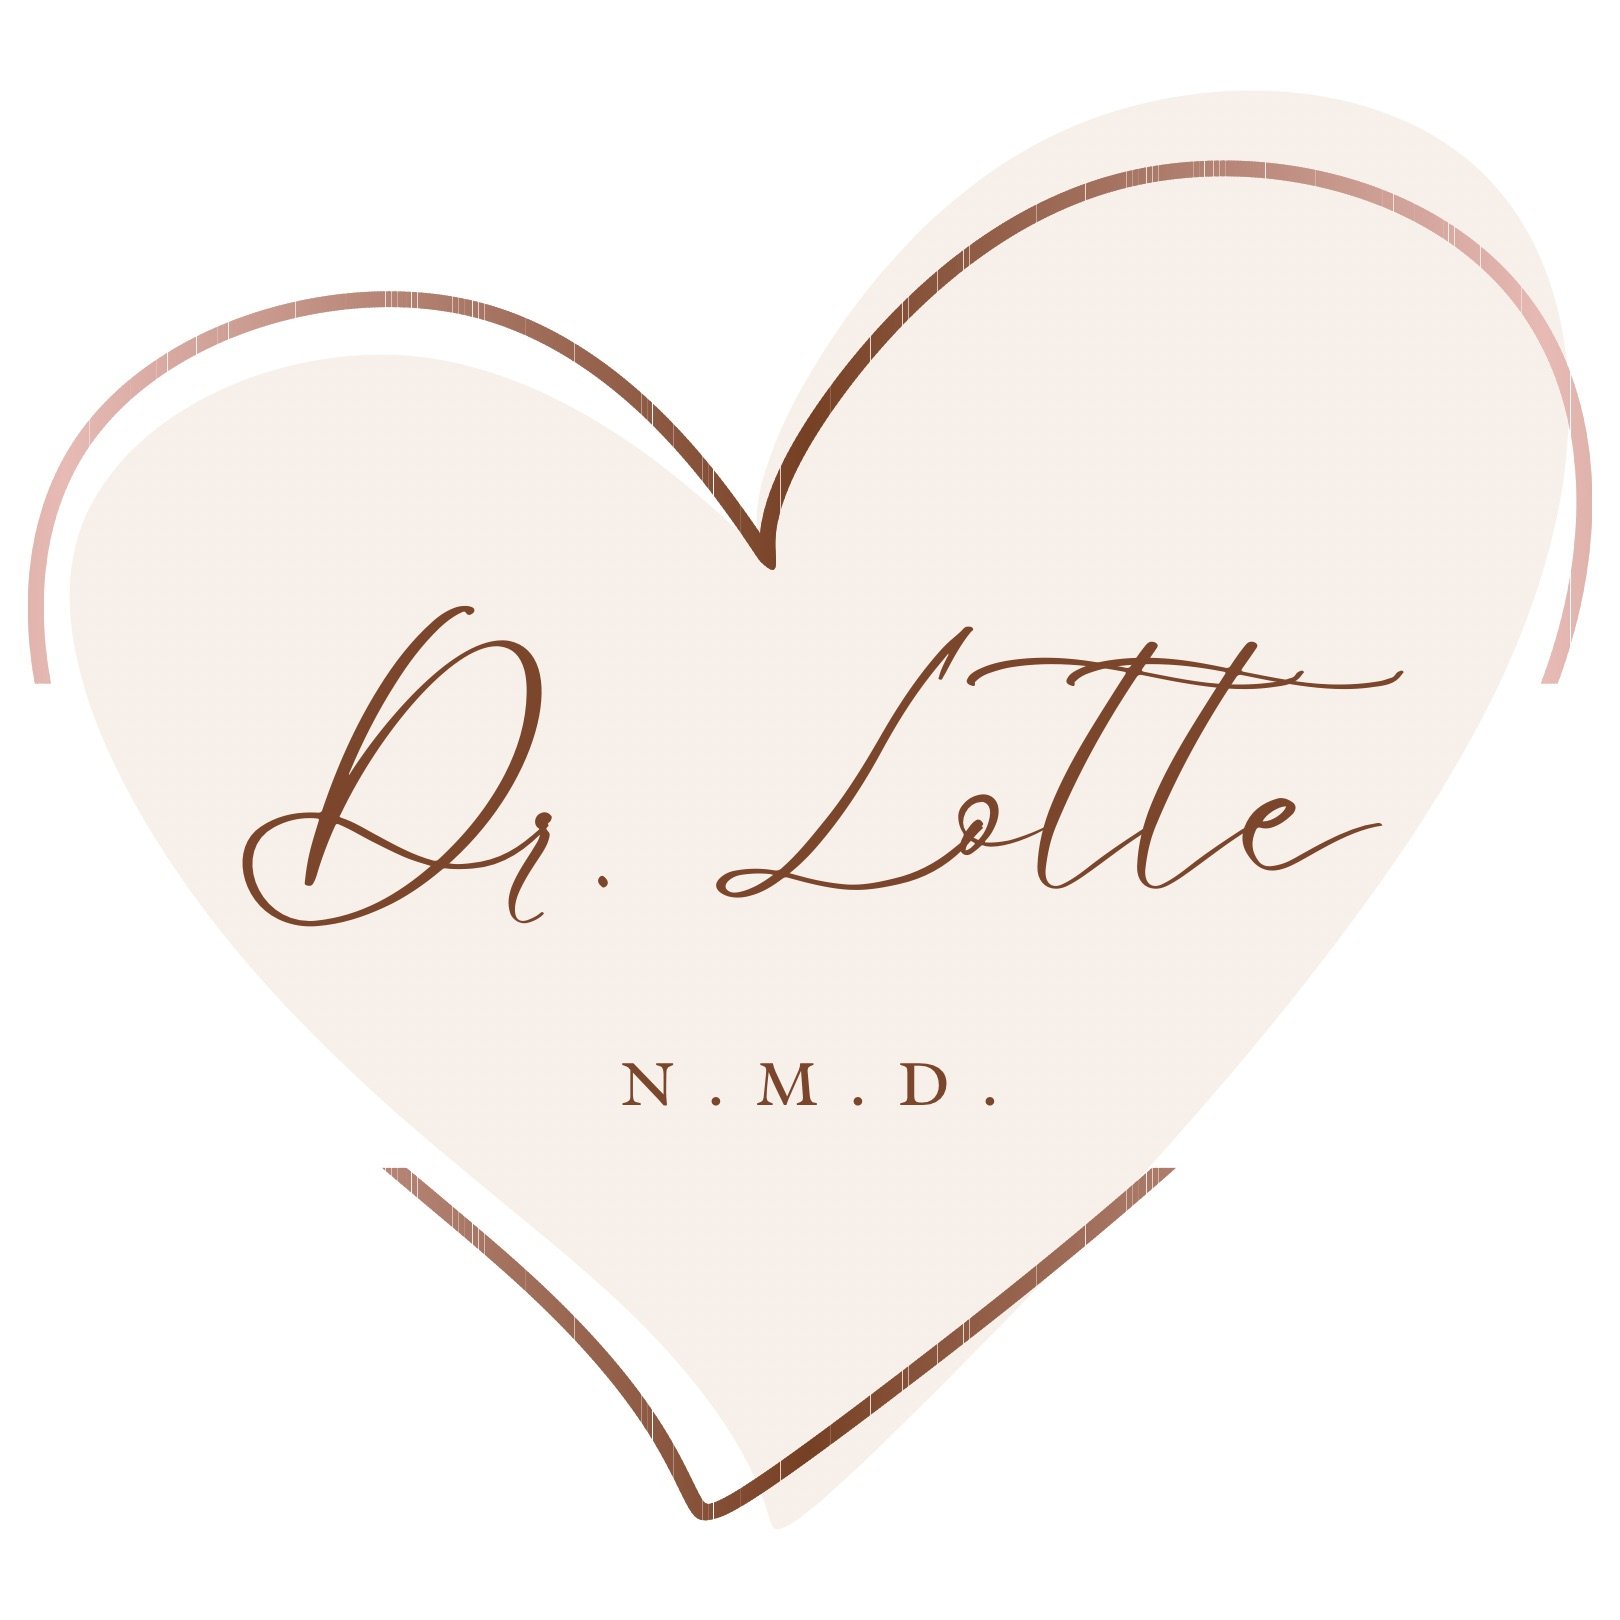 Dr. Lotte